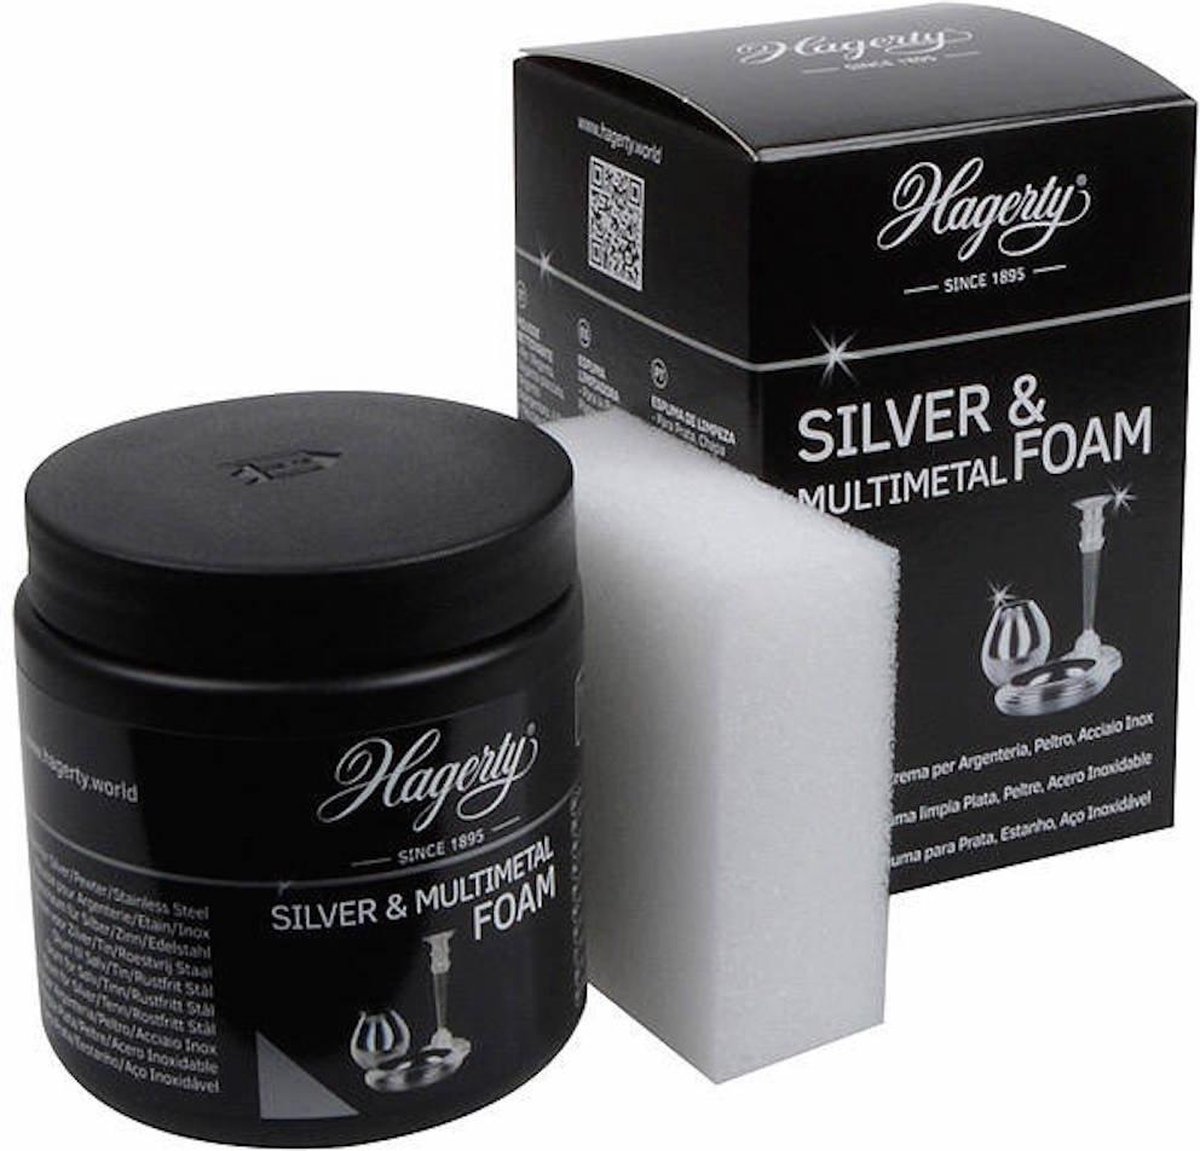 Hagerty Afwasmiddel RVS Bestek - & Multimetal Foam - 185 gr - Silver